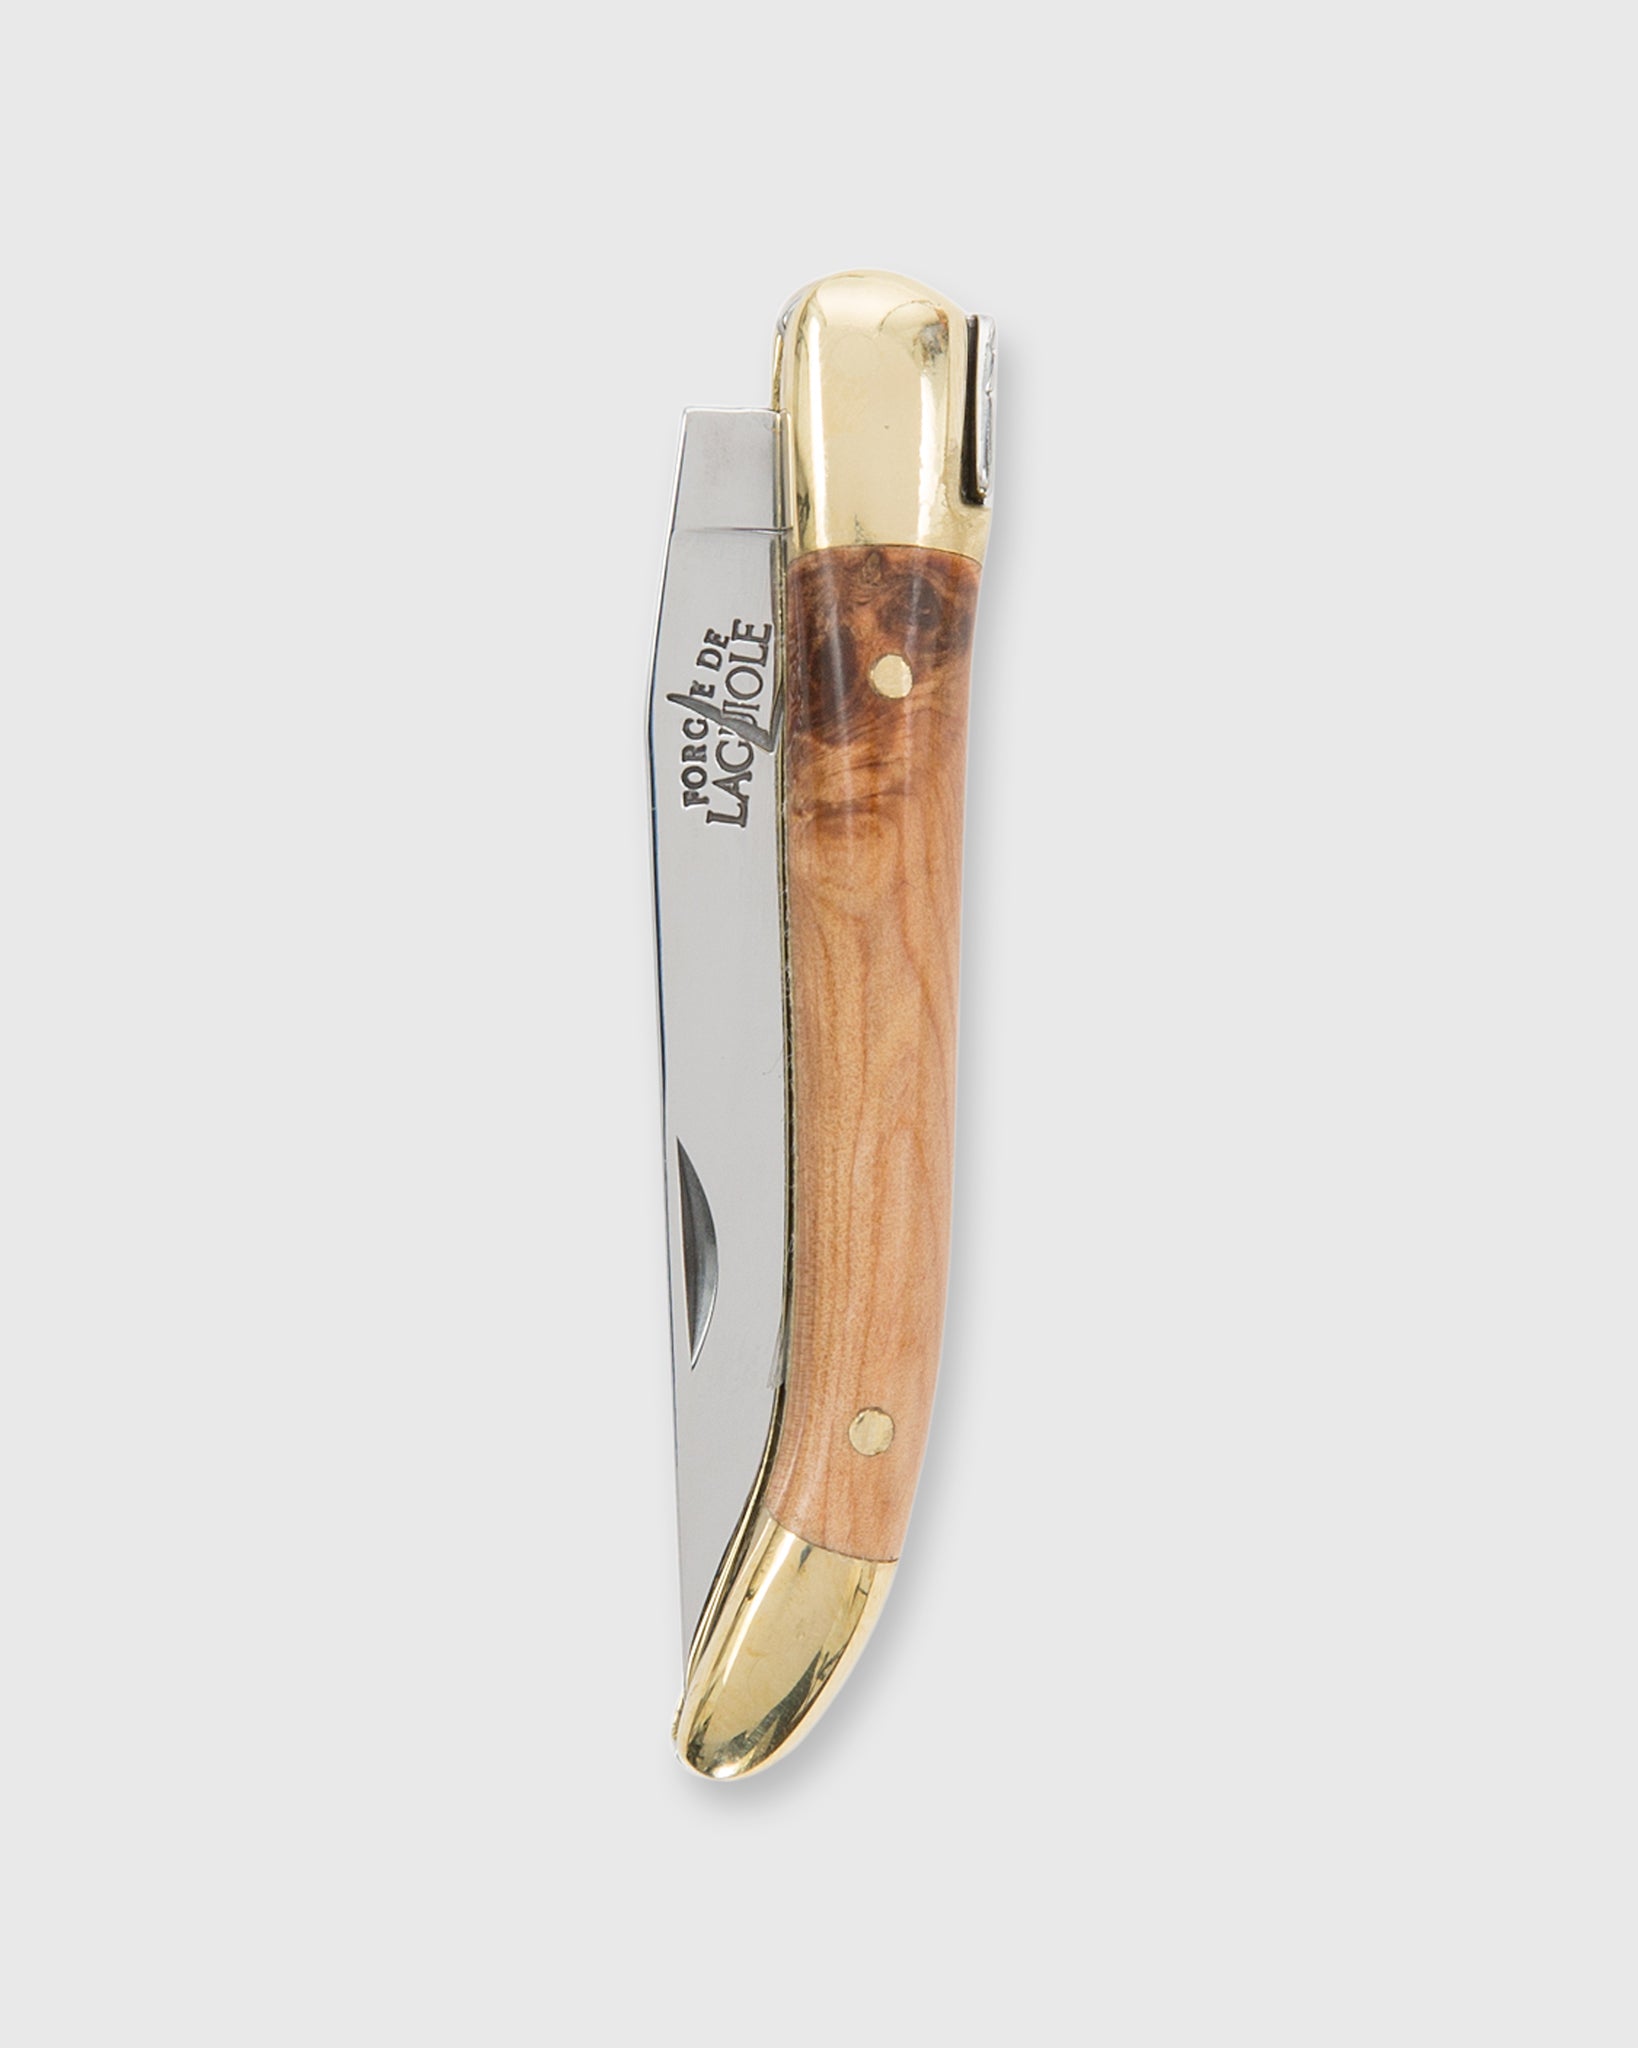 7cm Pocket Knife Juniper